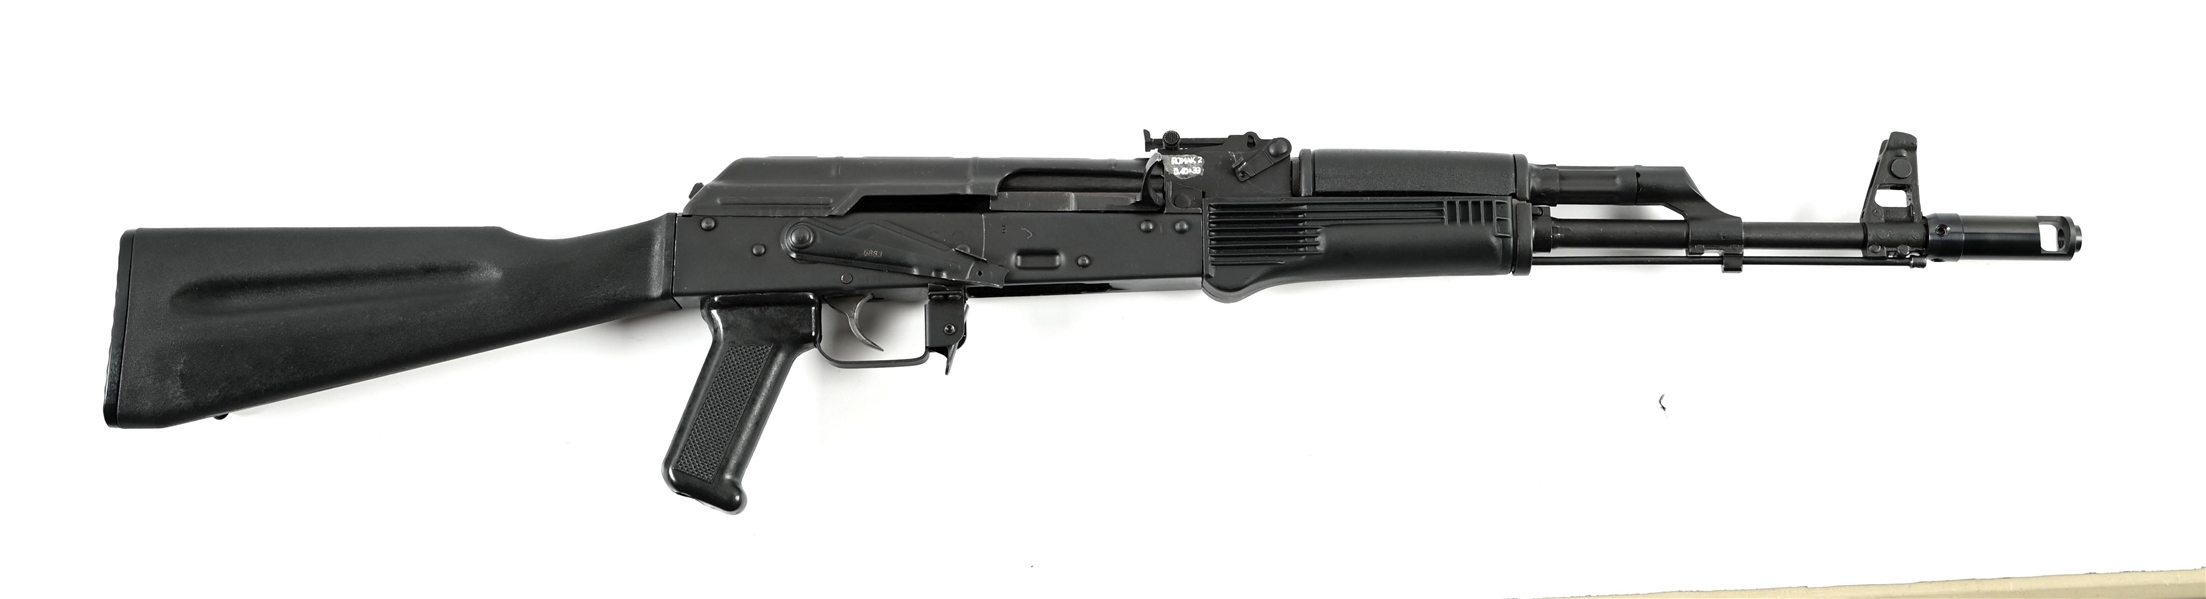 (M) ROMANIAN ROMAK 2 SEMI-AUTOMATIC AK-74 STYLE RIFLE.